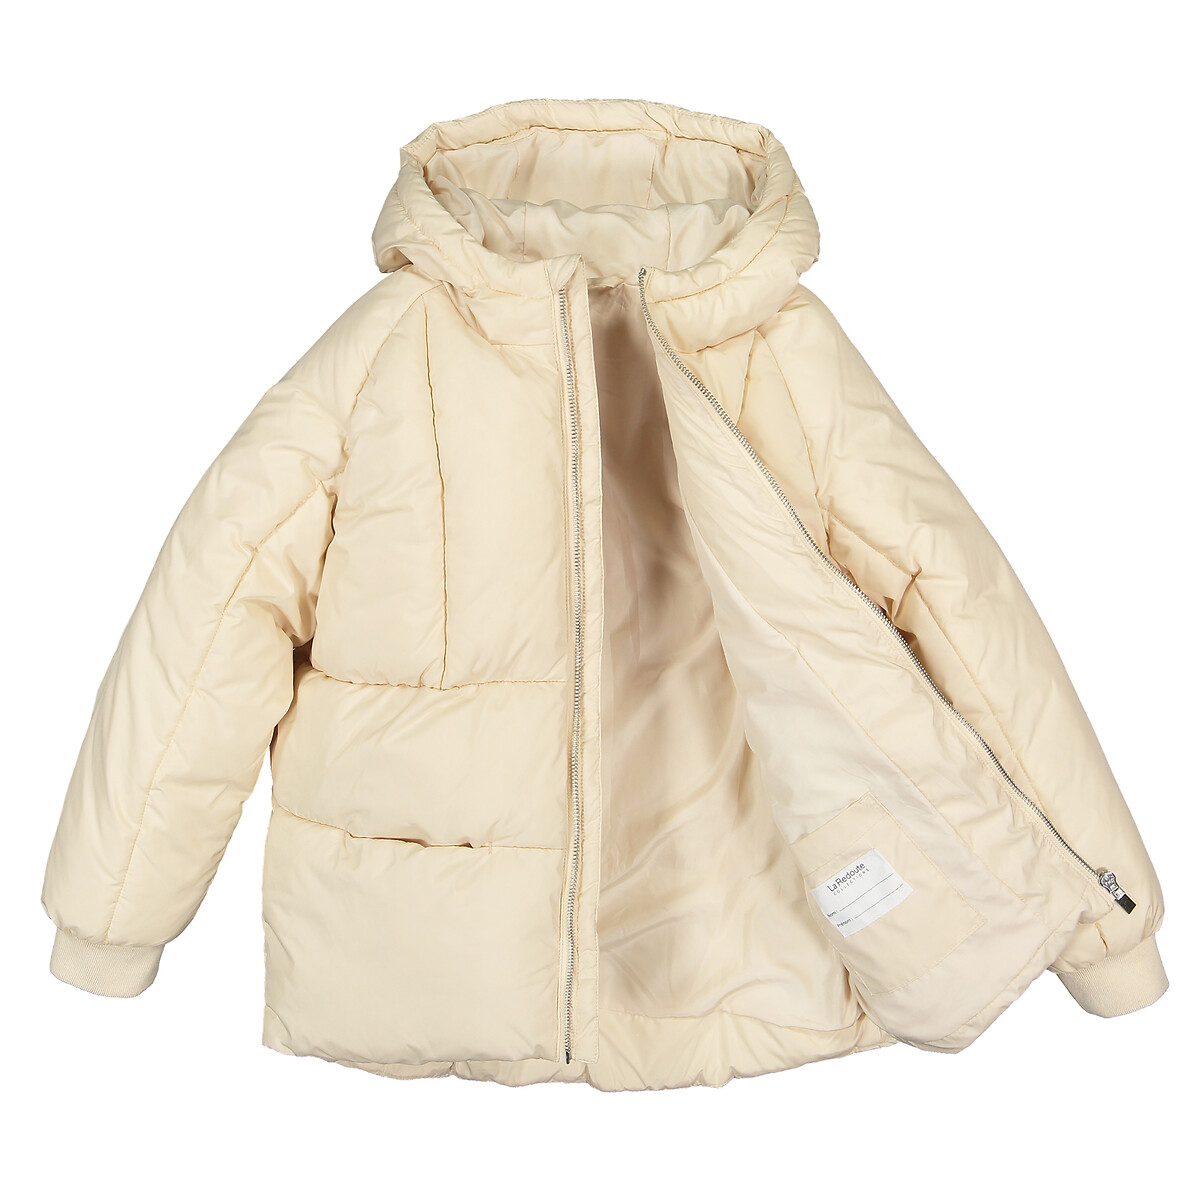 Куртка LaRedoute Стеганая с капюшоном теплая и пышная 3-14 лет 5 лет - 108 см бежевый, размер 5 лет - 108 см - фото 4